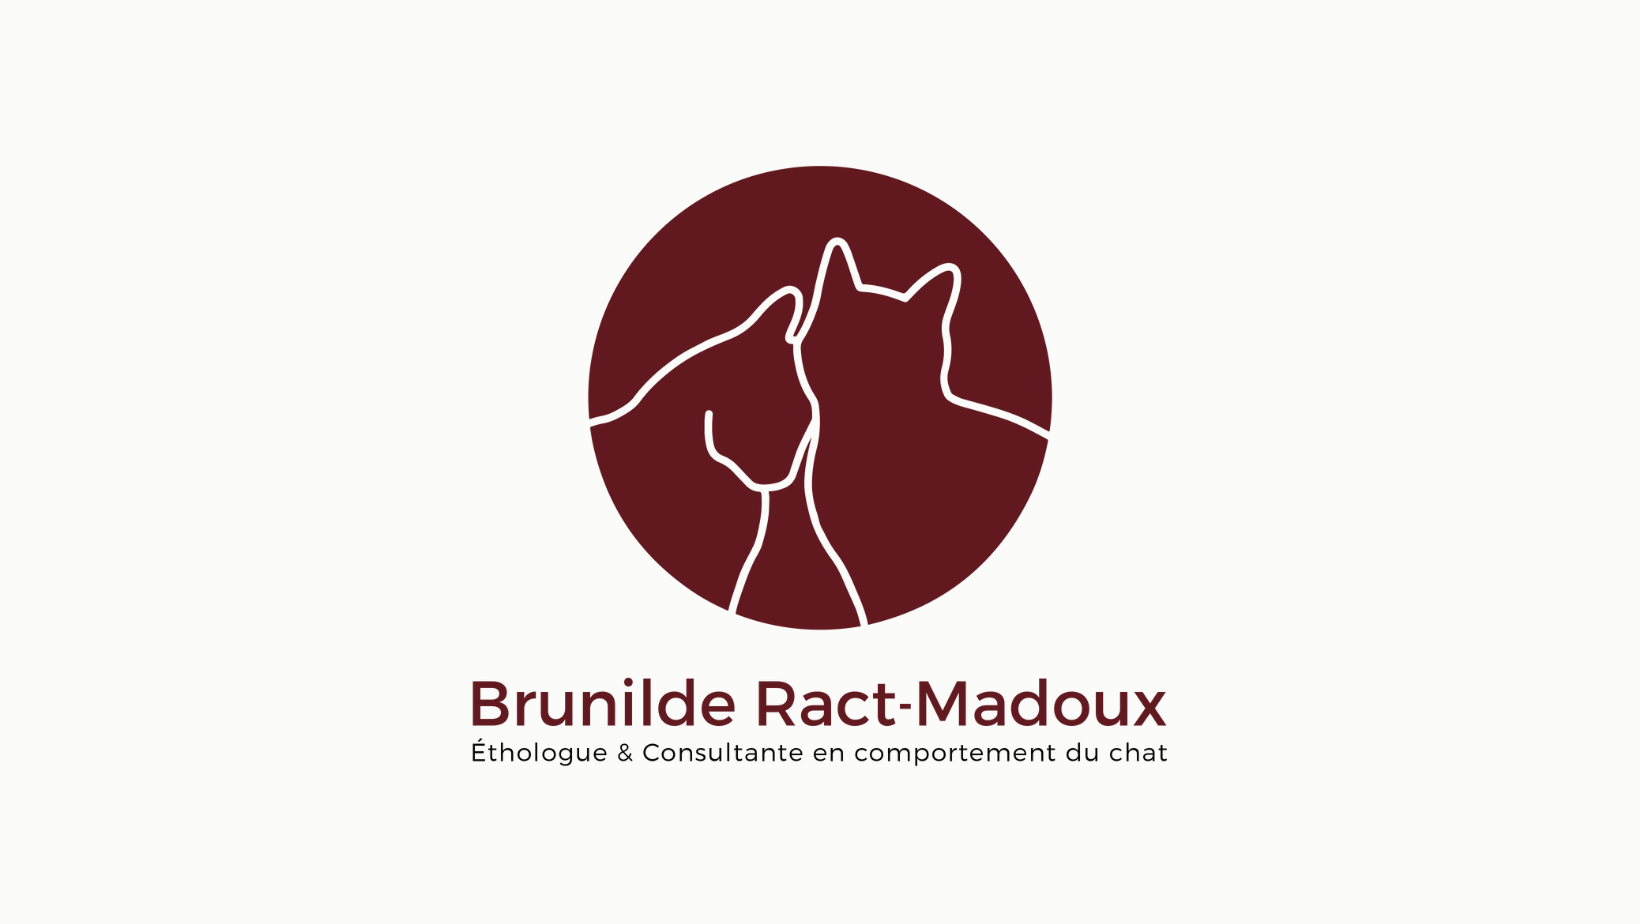 Brunilde Ract-madoux